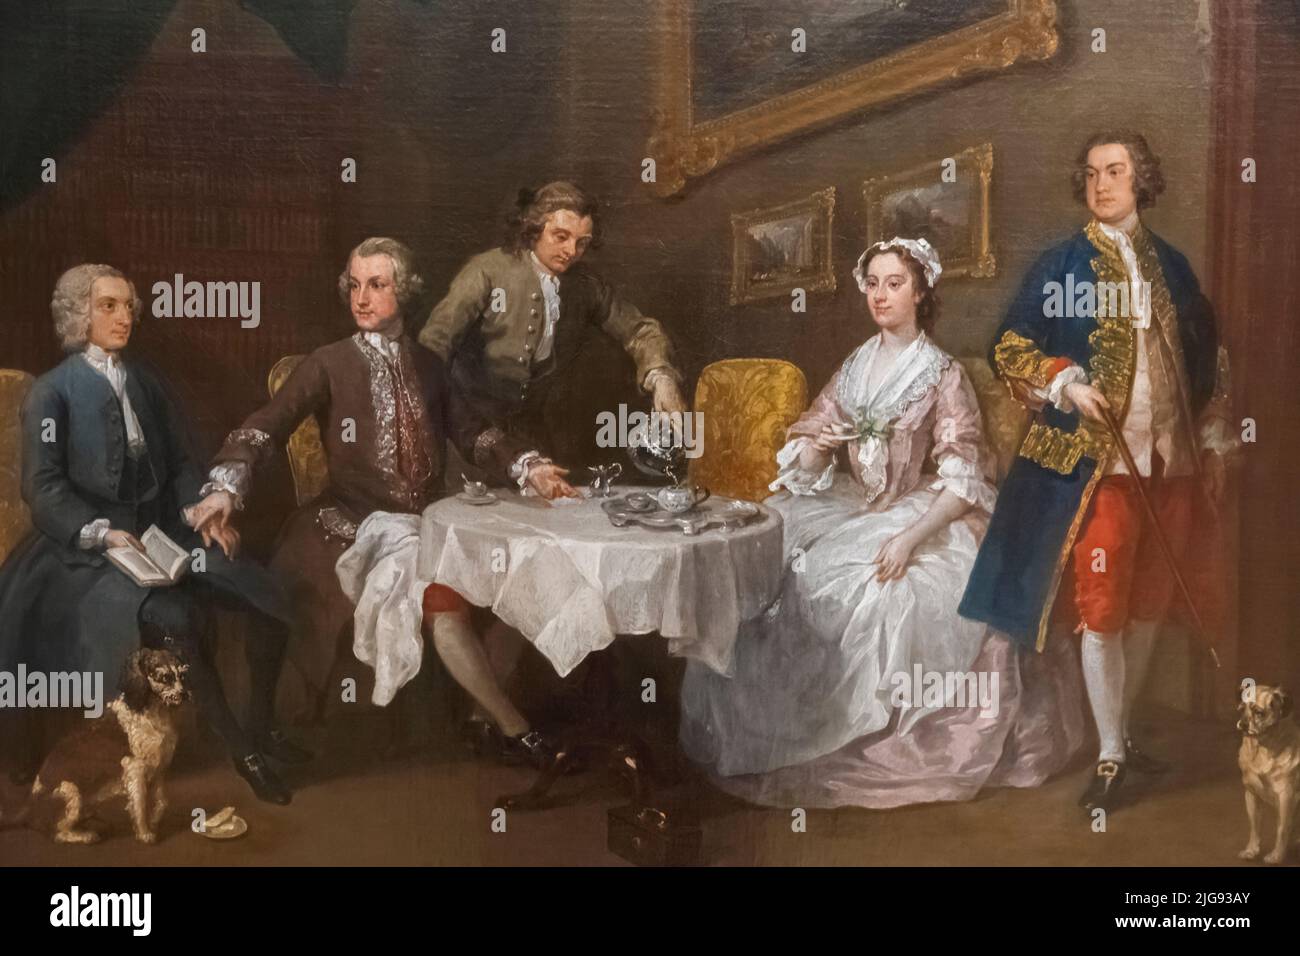 Peinture de la famille Strode par William Hogarth datée 1738 Banque D'Images